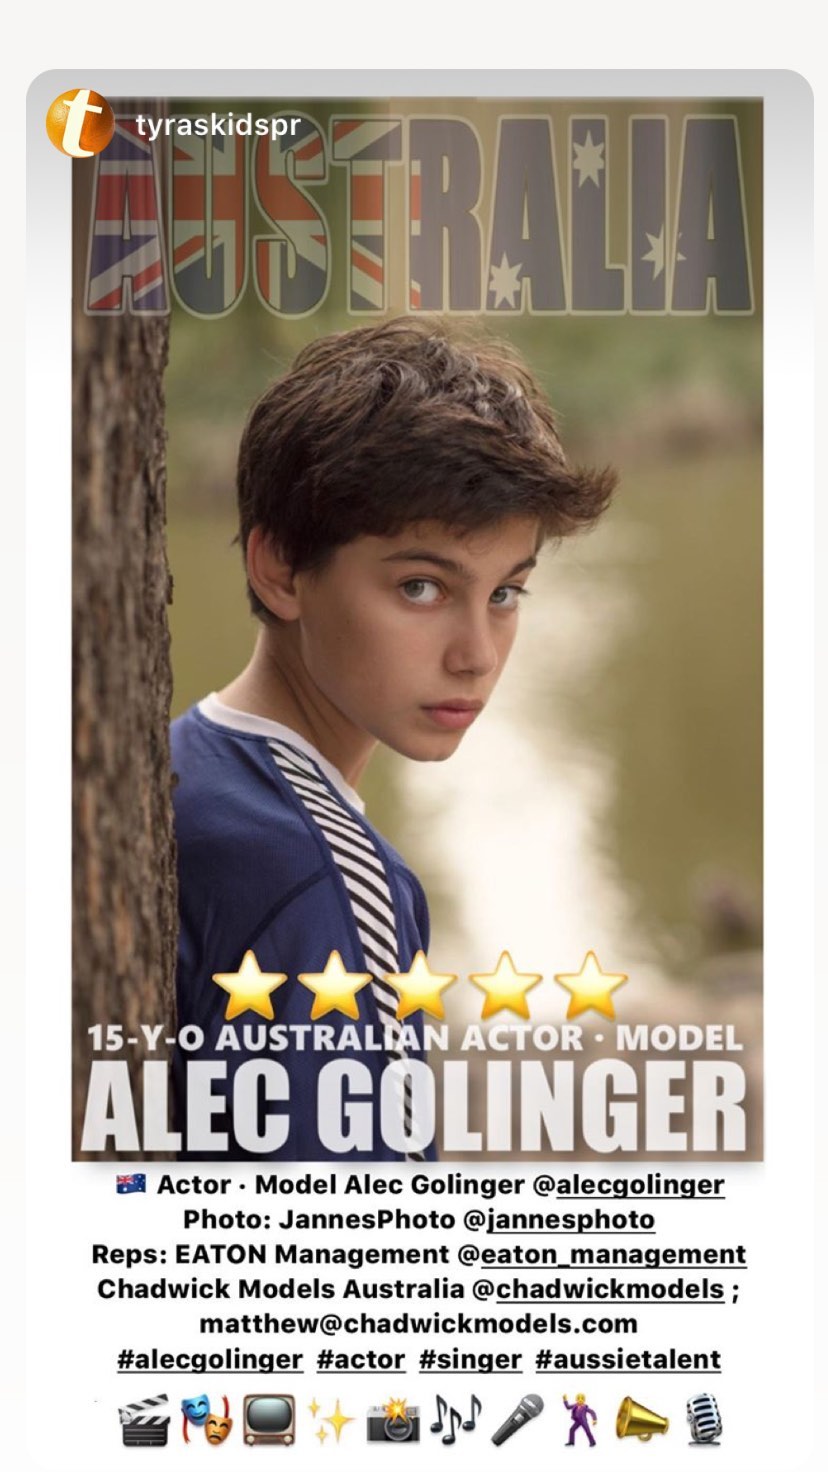 General photo of Alec Golinger